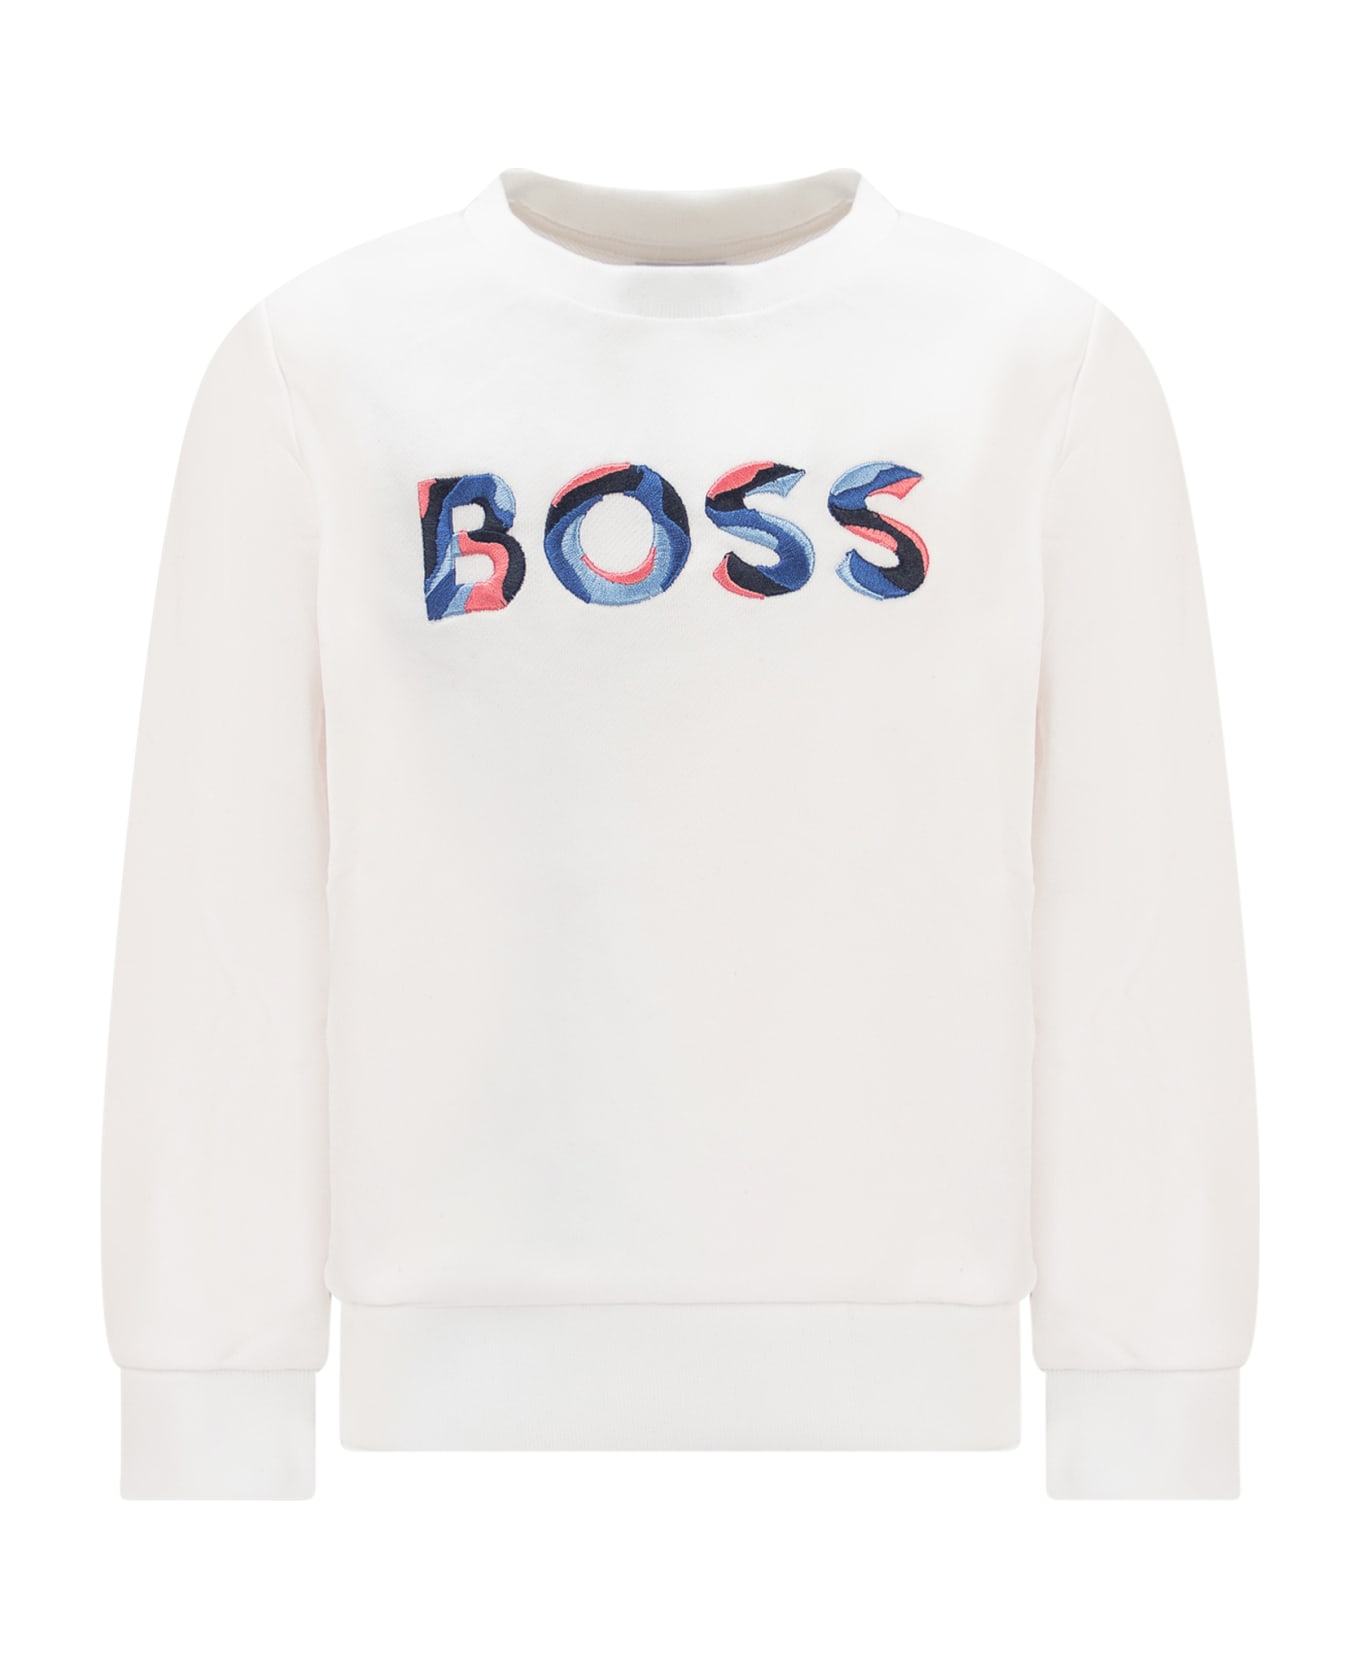 Hugo Boss Sweatshirt With Embroidery - BIANCO